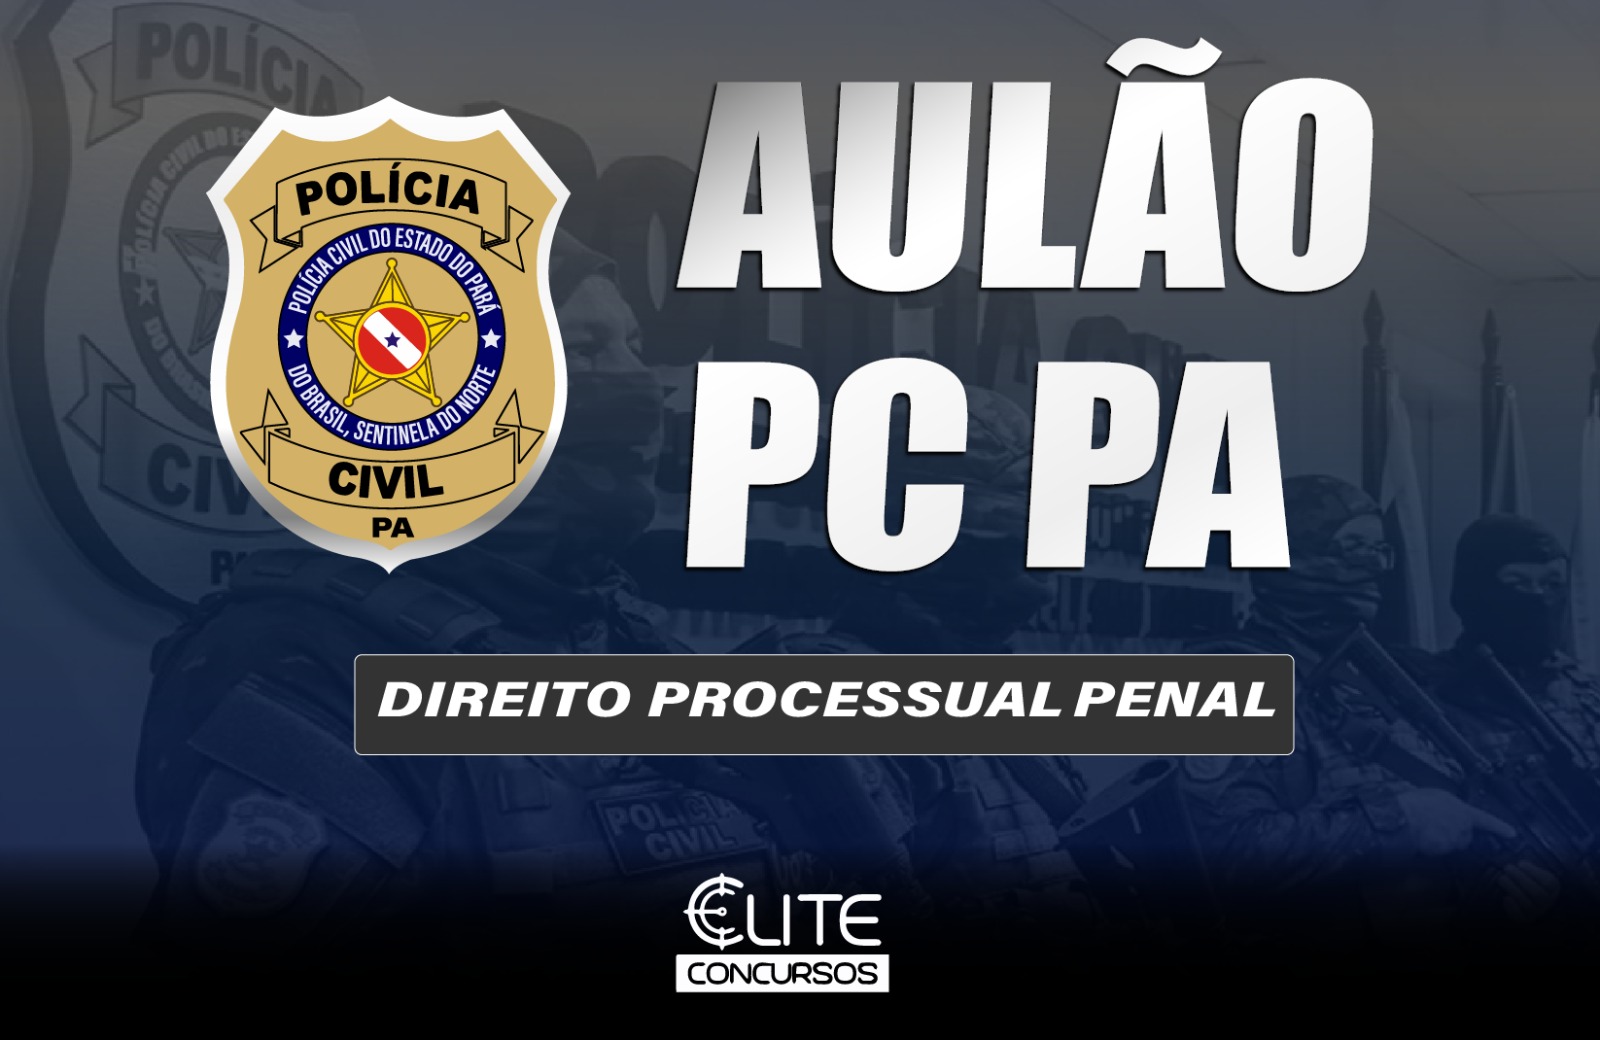 AULO POLCIA CIVIL - PROCESSUAL PENAL